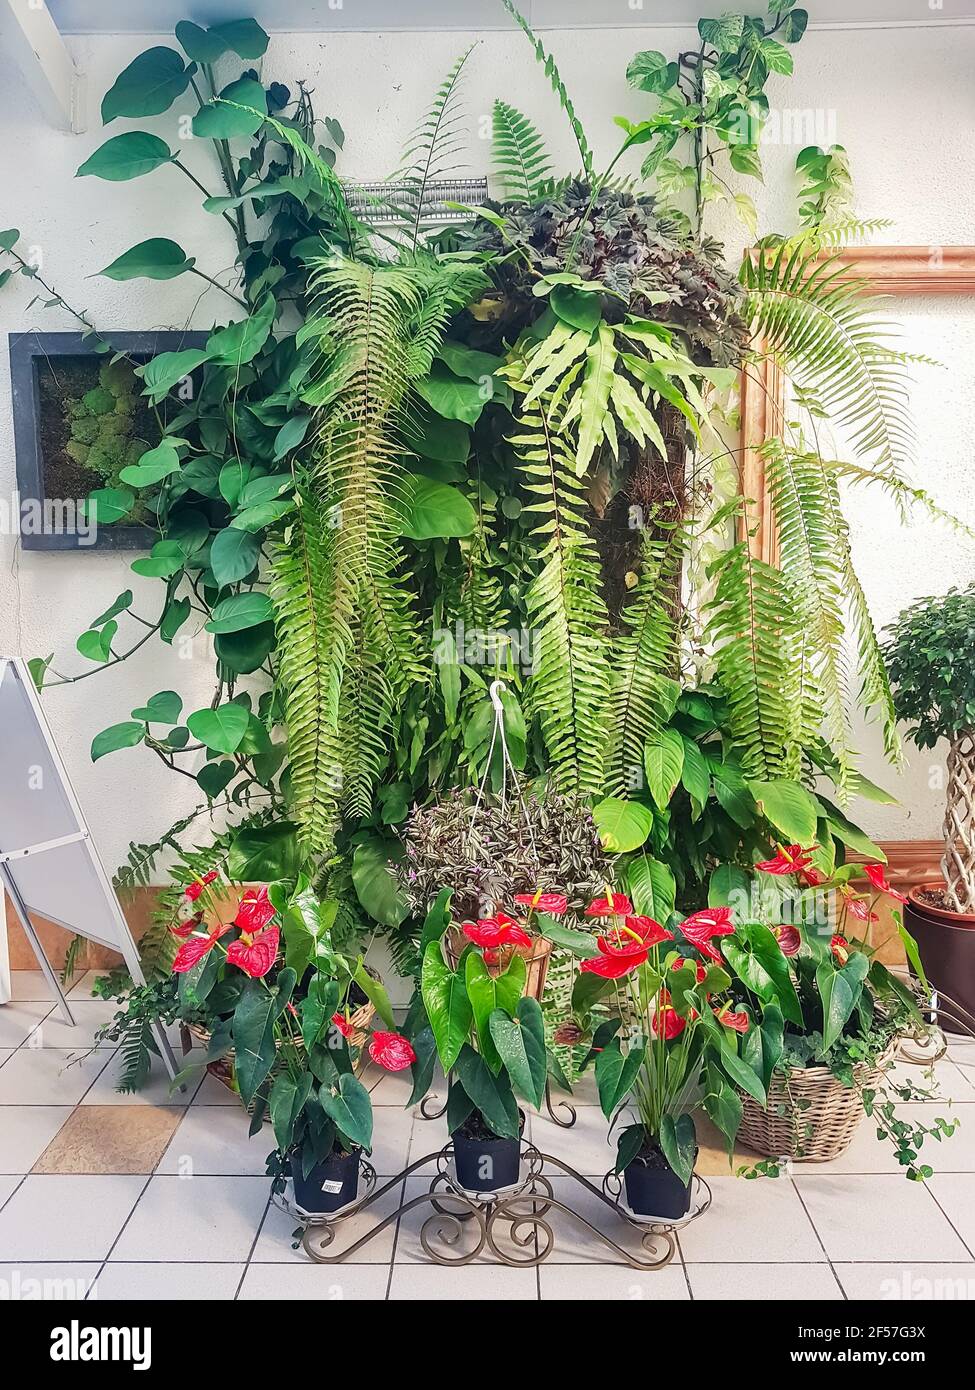 composizione floristica un muro vivente di felci vari e altre piante esotiche all'interno della serra. Liana, felci, anthuriums in decorativ Foto Stock